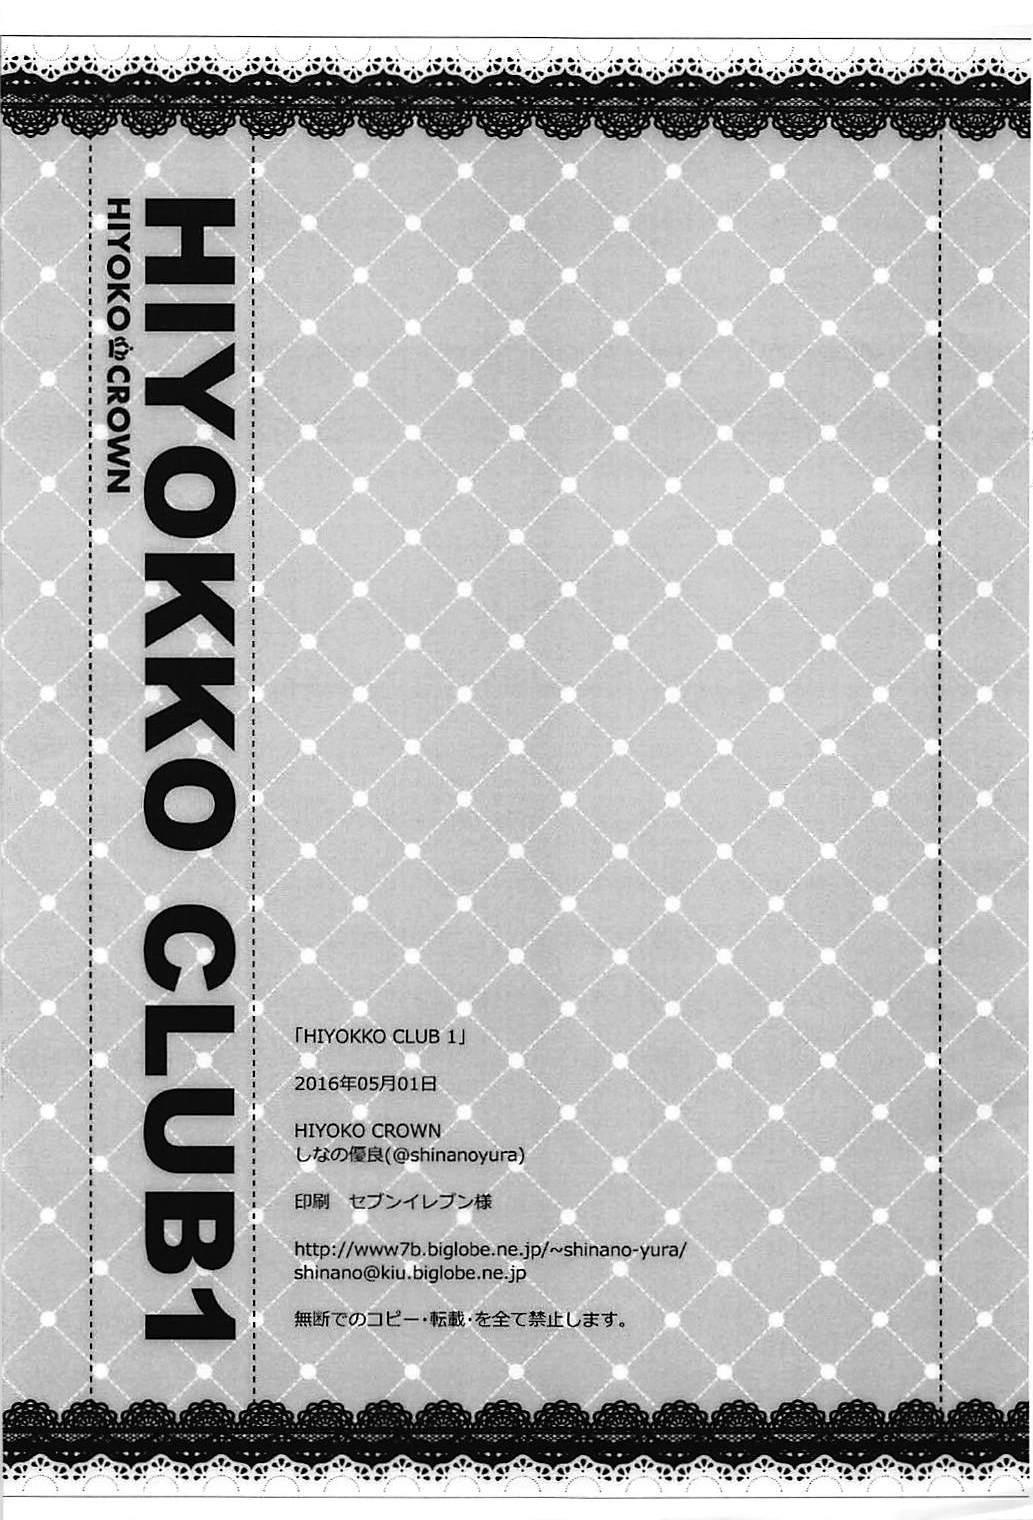 HIYOKKO CLUB 1 4